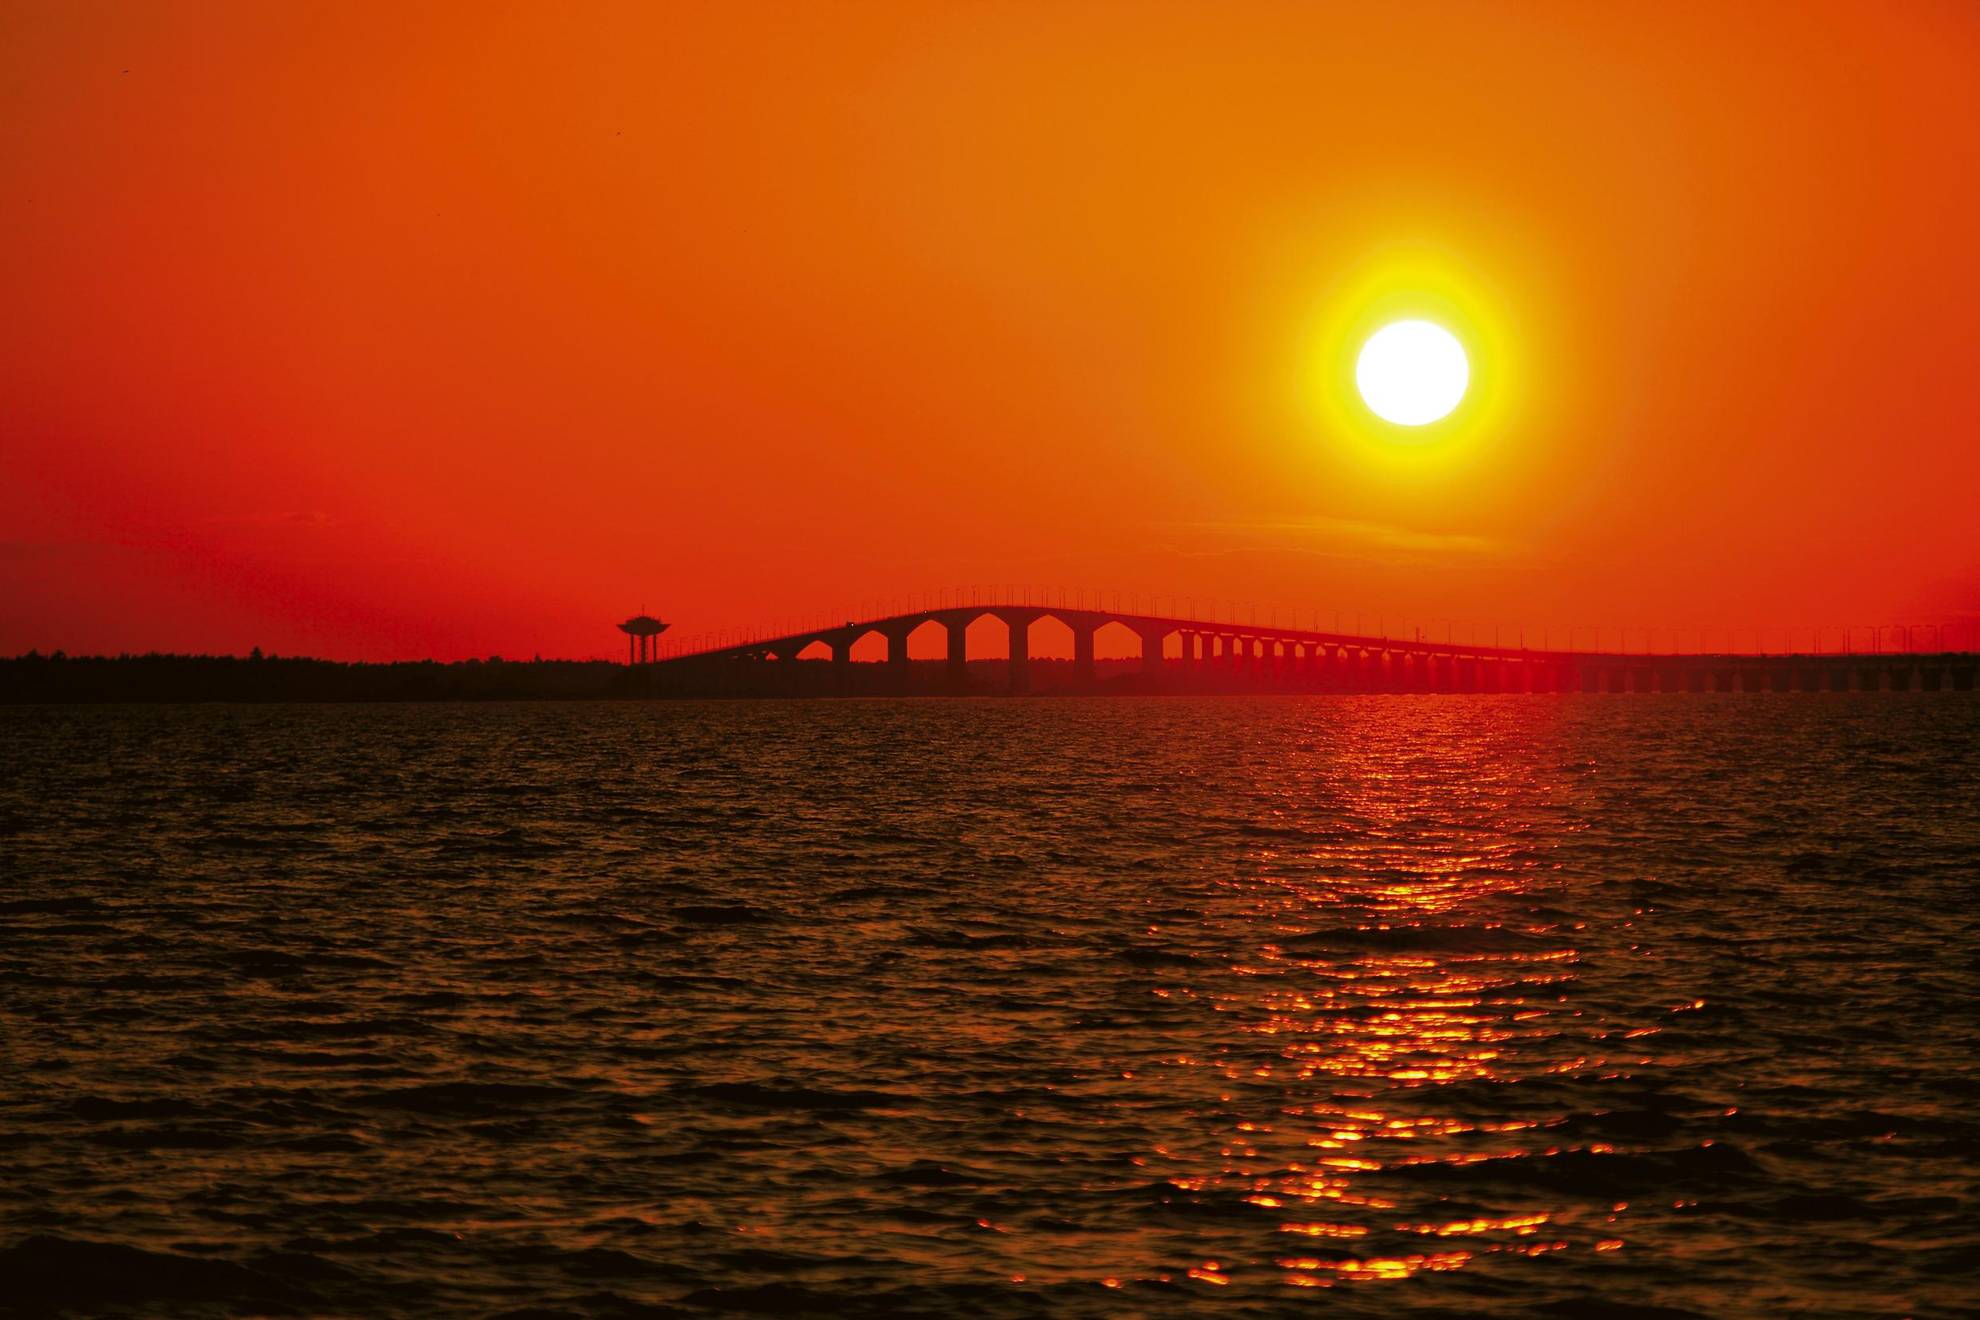 Die Sonne geht über der Brücke Ölandsbron unter. Der Himmel ist orange und die gelbe Sonne macht eine Solarstraße im Wasser.